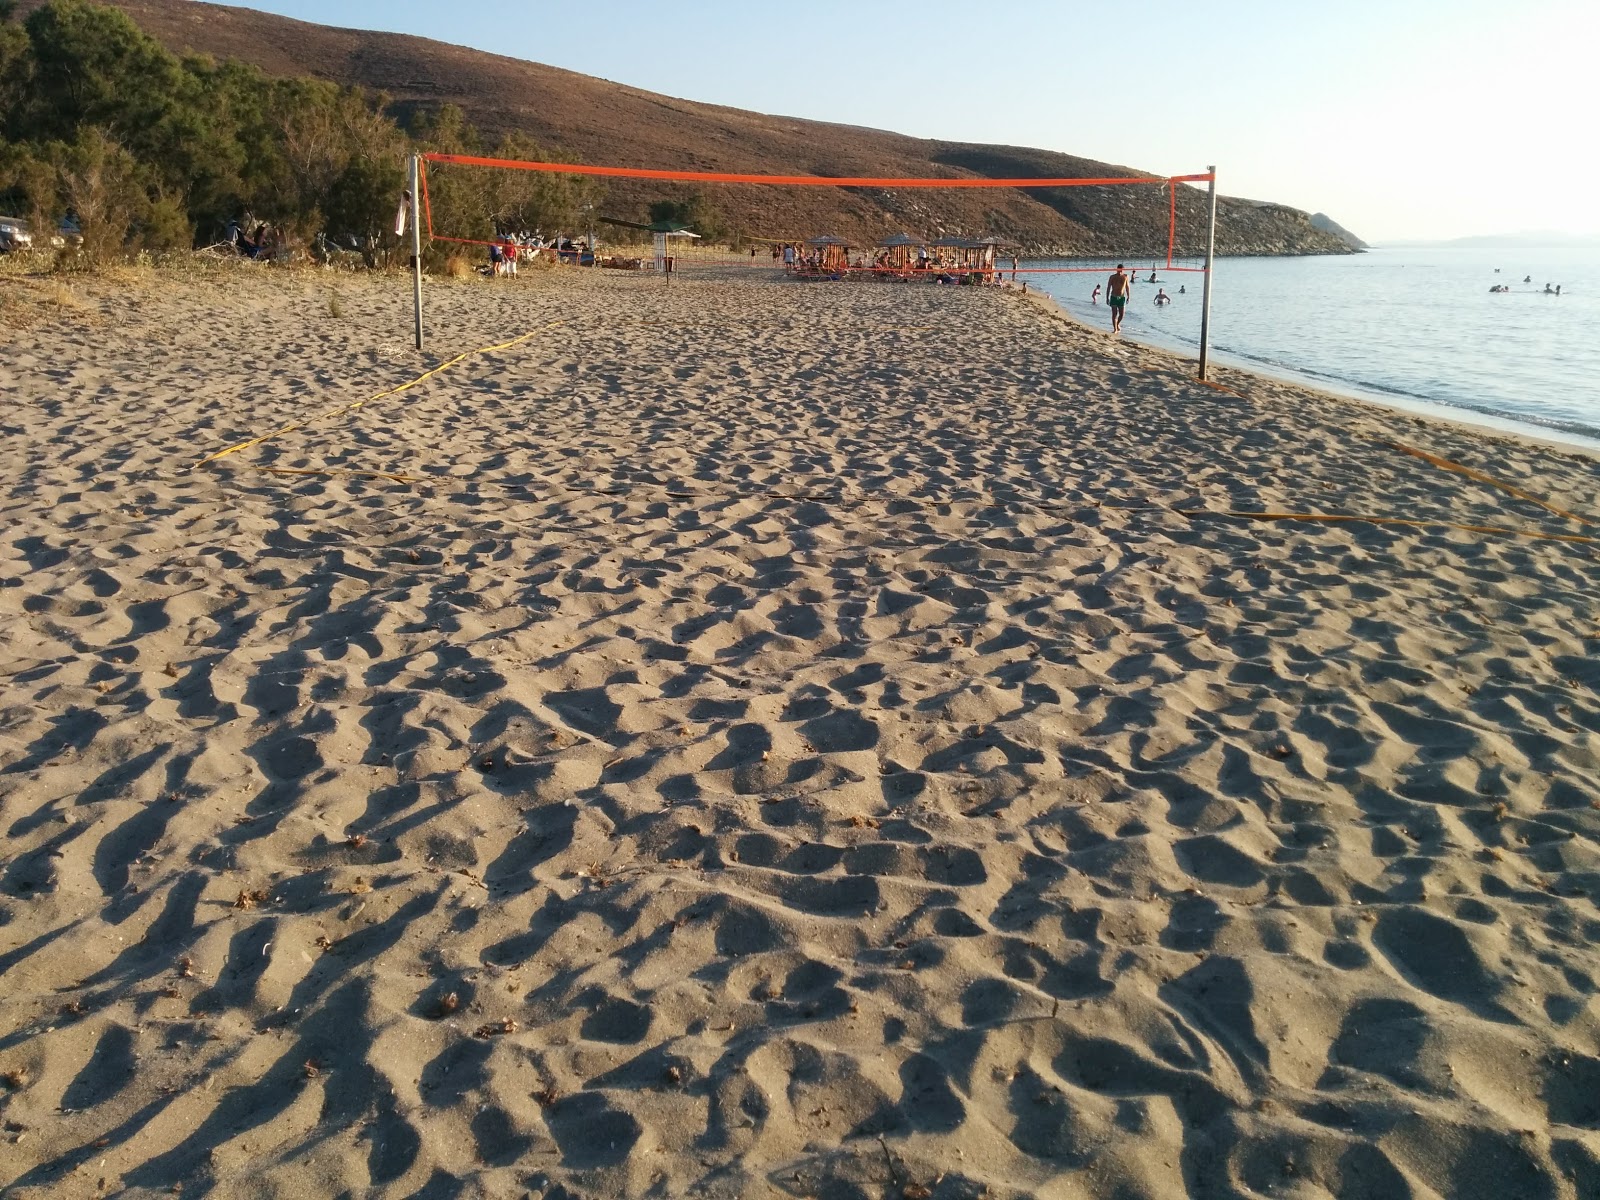 Fotografie cu Zematas beach - locul popular printre cunoscătorii de relaxare